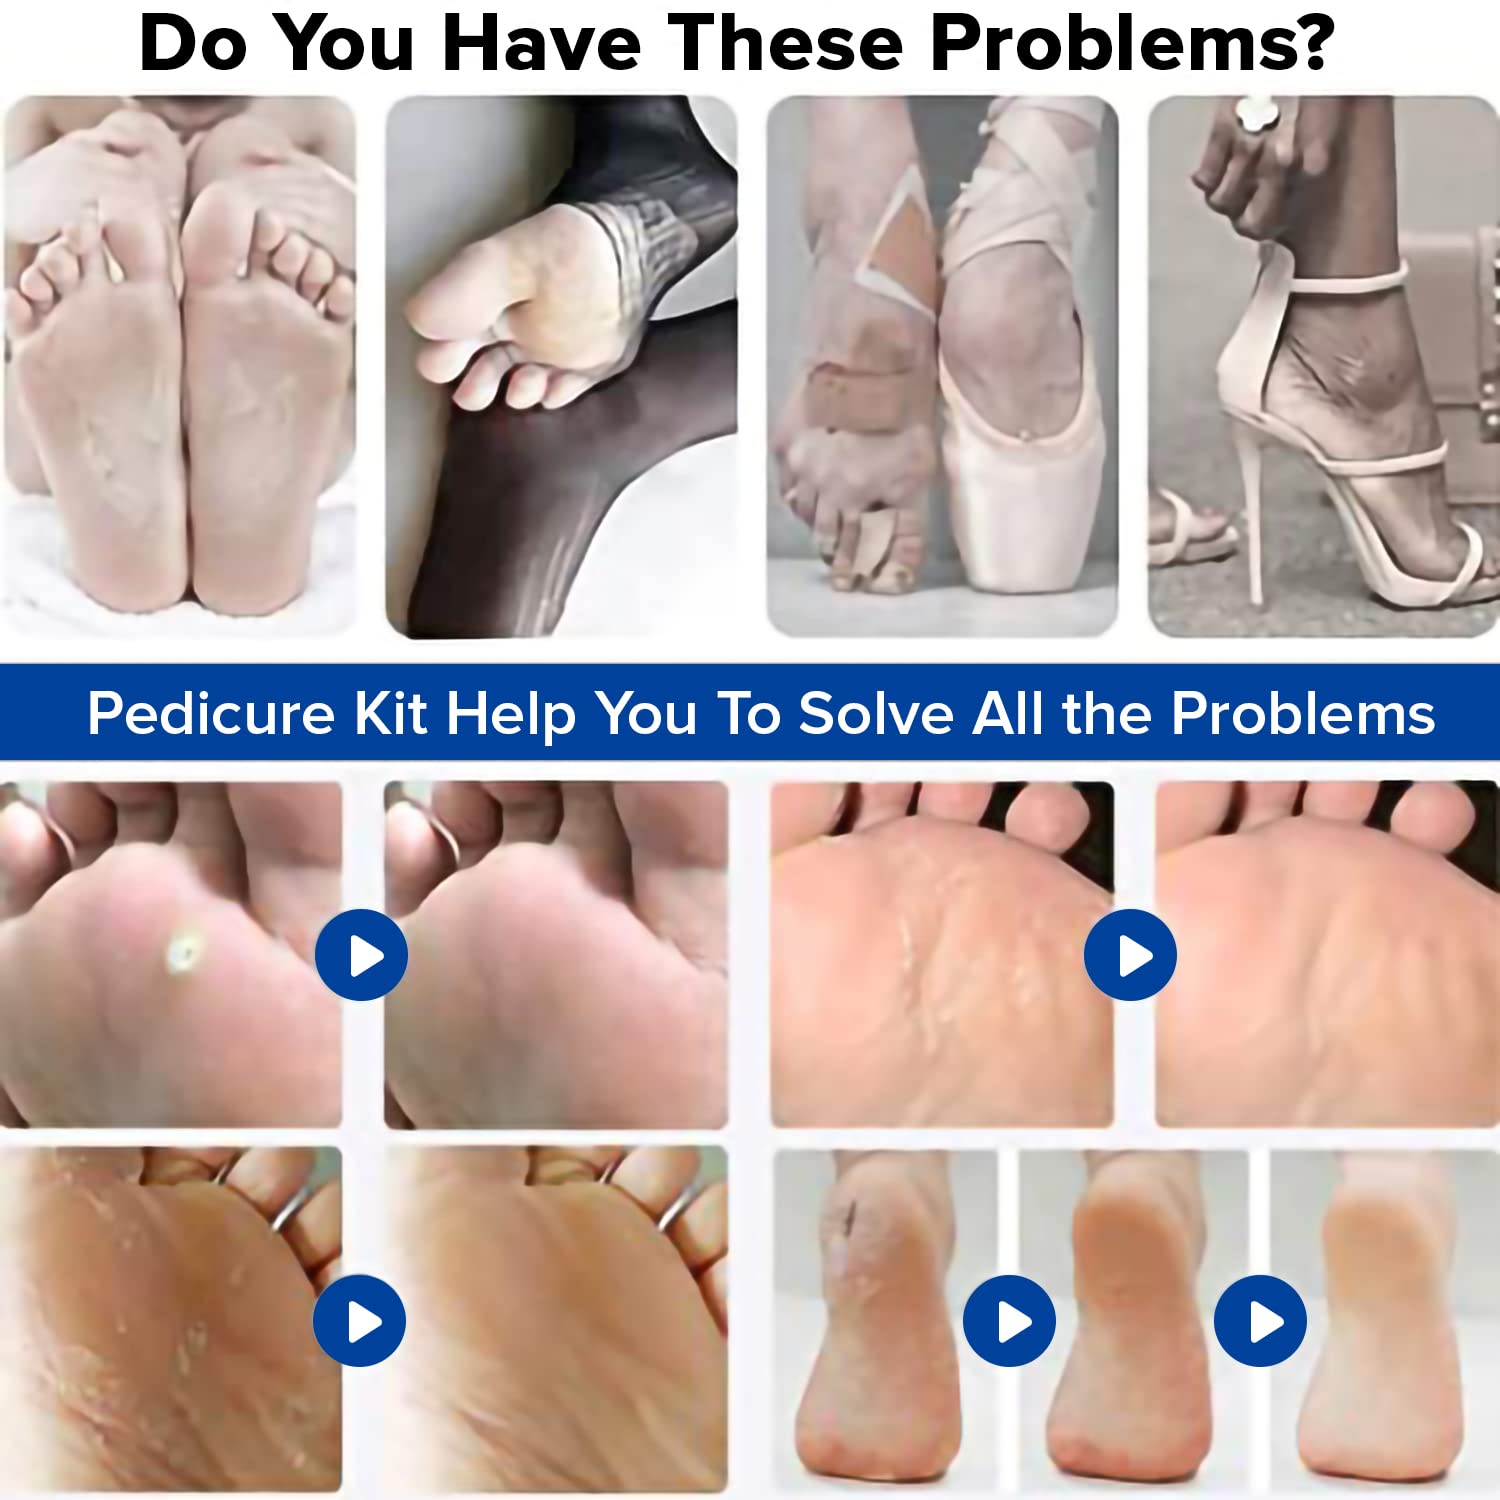 Dr Foot Pedicure Tools for Feet - 8 in 1 Pedicure Kit | Foot Scrubber for Dead Skin, Callus Remover, Foot Scraper, Foot File, Pitchfork, Filer for Nail Repair - 1 Set